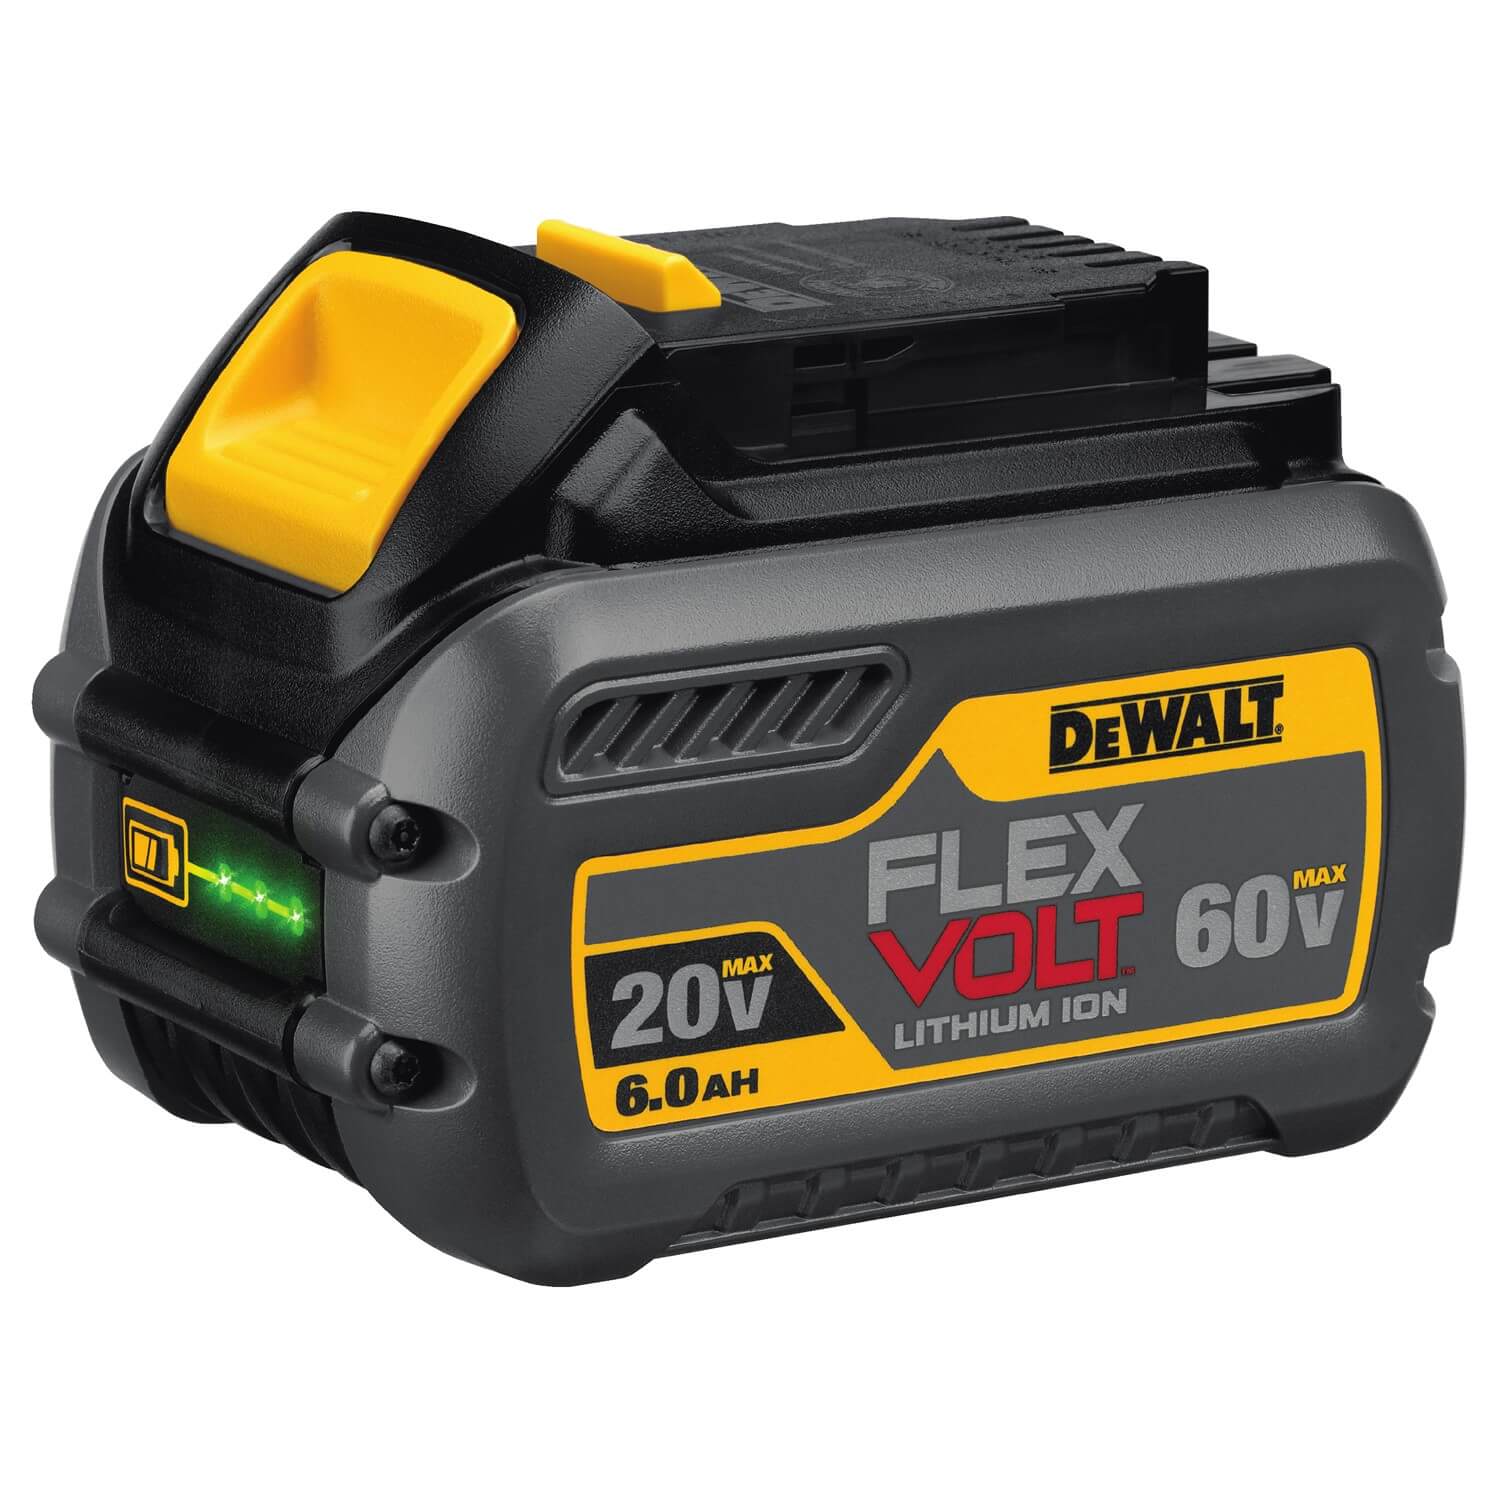 DEWALT, DEWALT DCB606 20/60V MAX FLEXVOLT 6.0 Ah Battery Pack